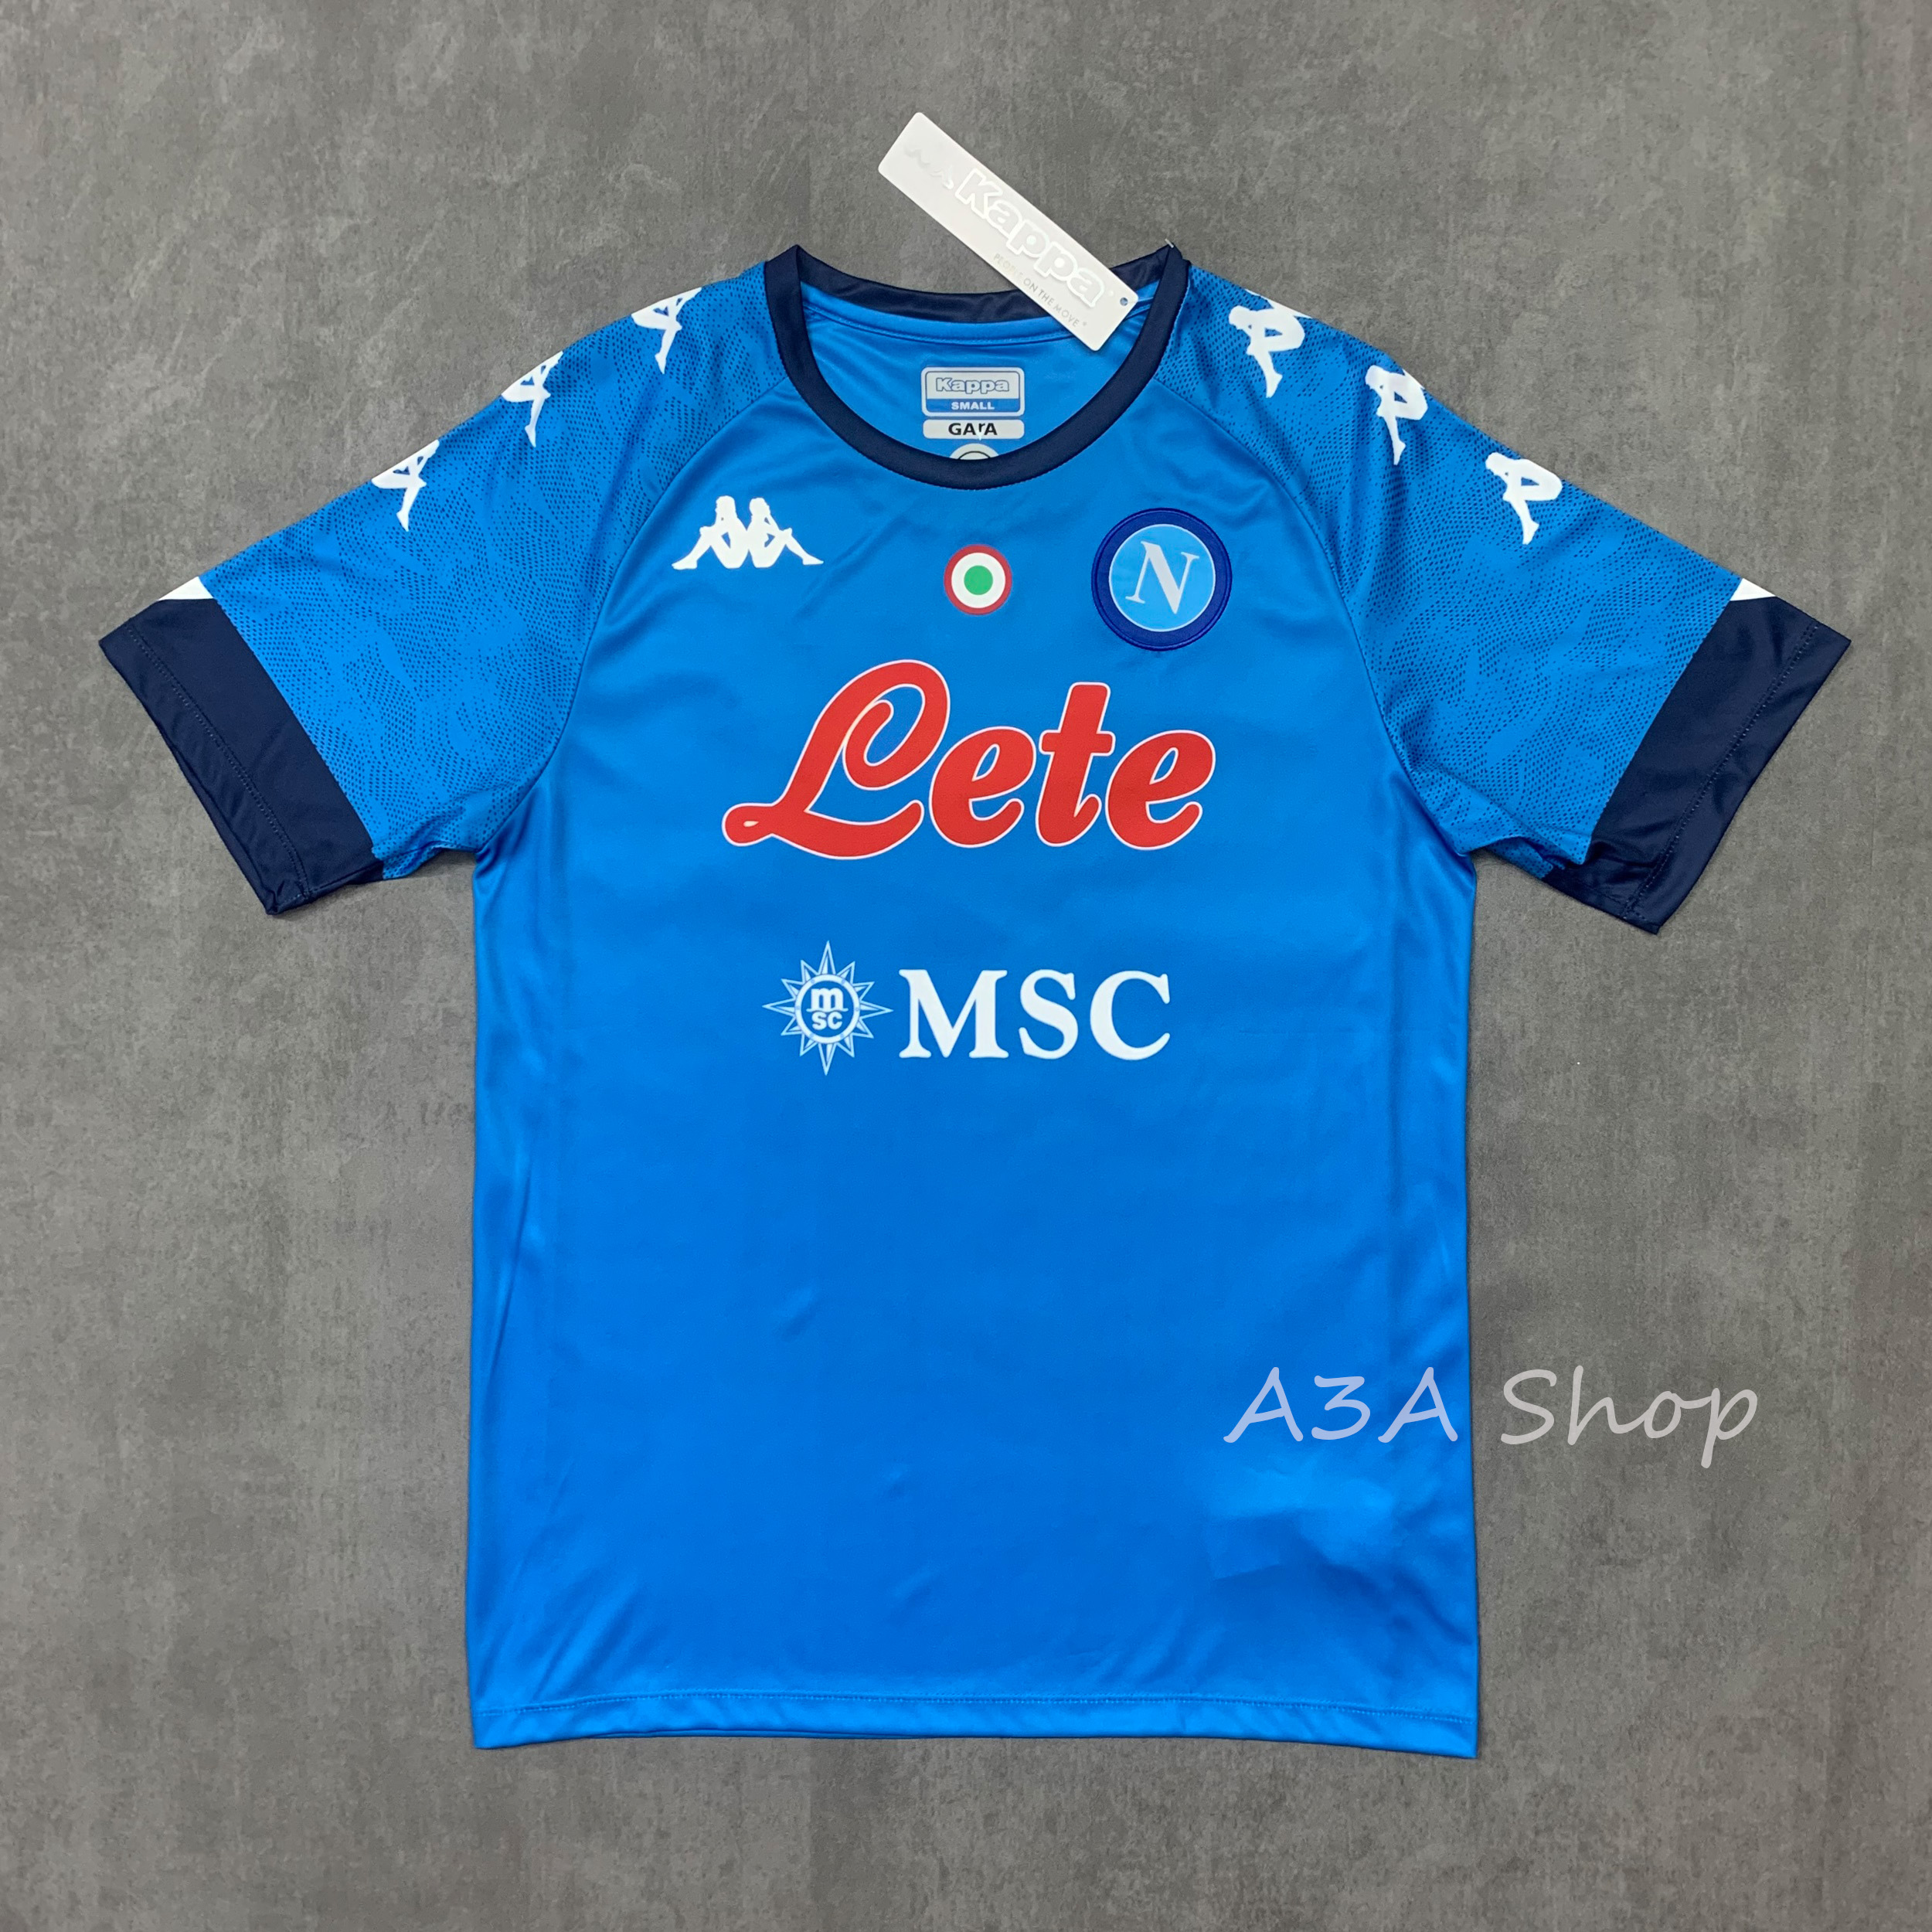 ใหม่!! Napoli FOOTBALL SHIRT SOCCER JERSEY 21/22 เสื้อบอล เสื้อฟุตบอลชาย เสื้อบอลชาย เสื้อกีฬาชาย2022 เสื้อทีมนาโปลี ฤดูกาล 2021/22 เกรด AAA